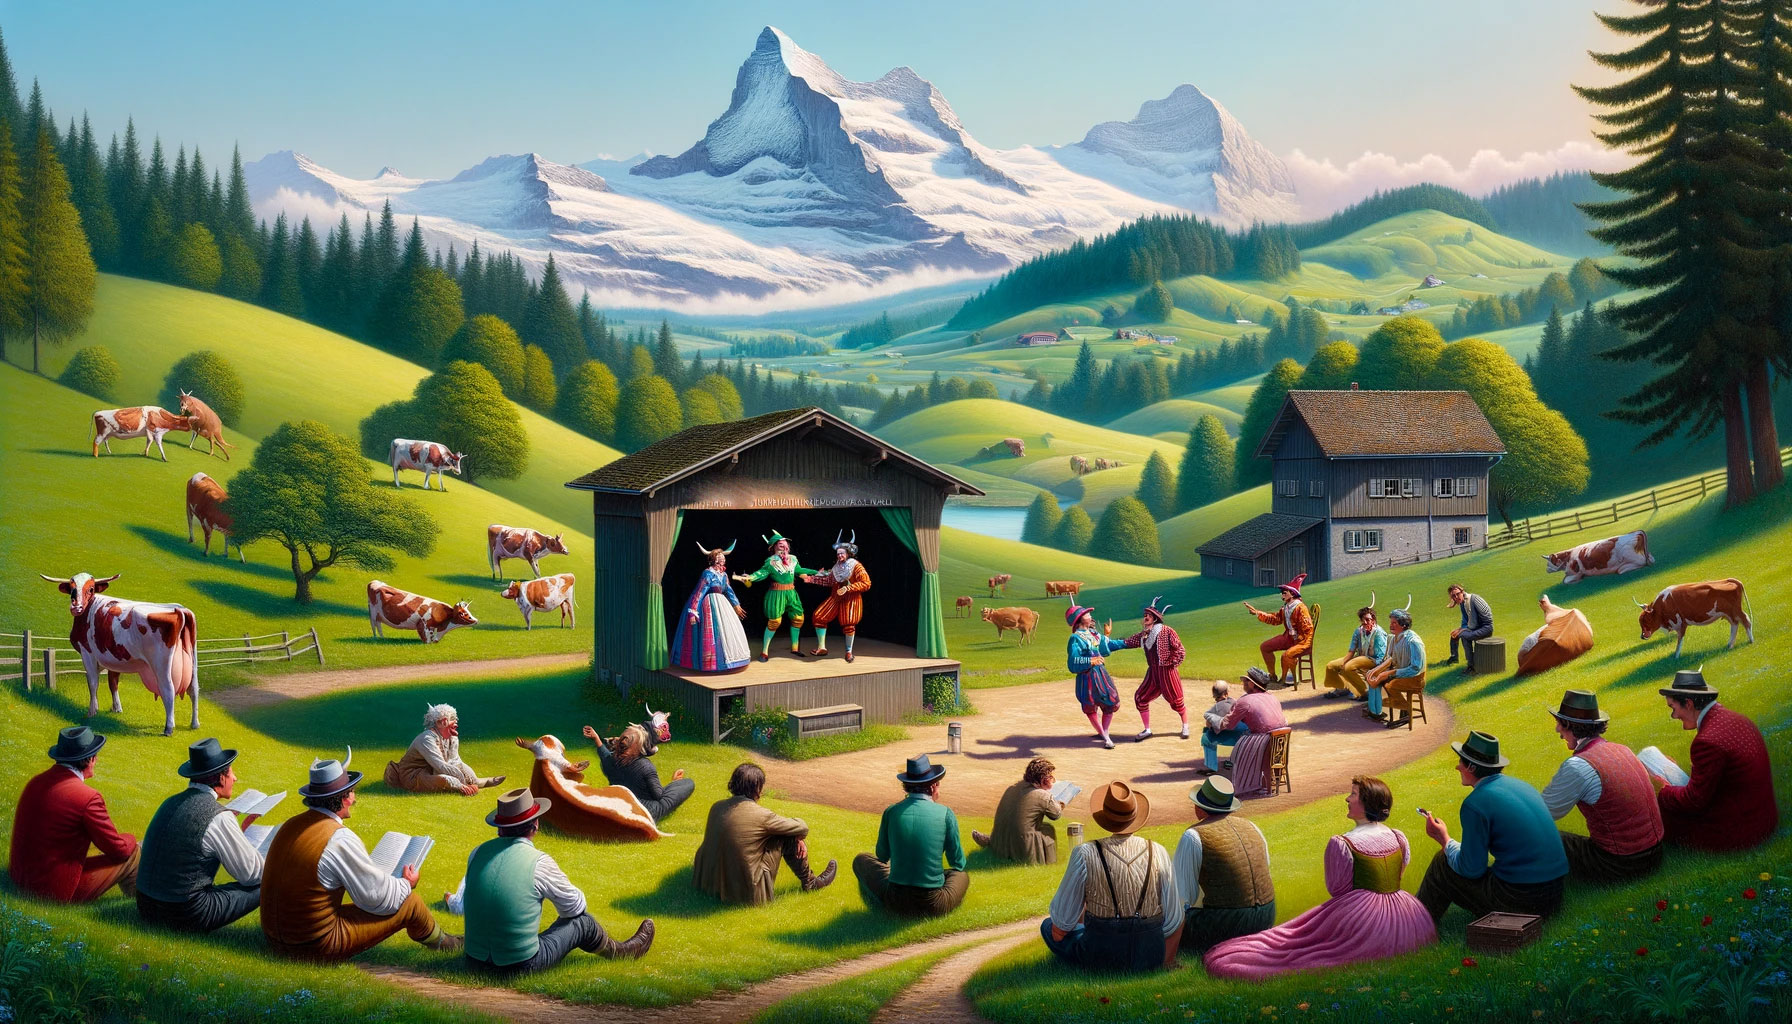 Improvisationstheater im Zürcher Oberland: Wo die Kühe lachen und die Berge applaudieren